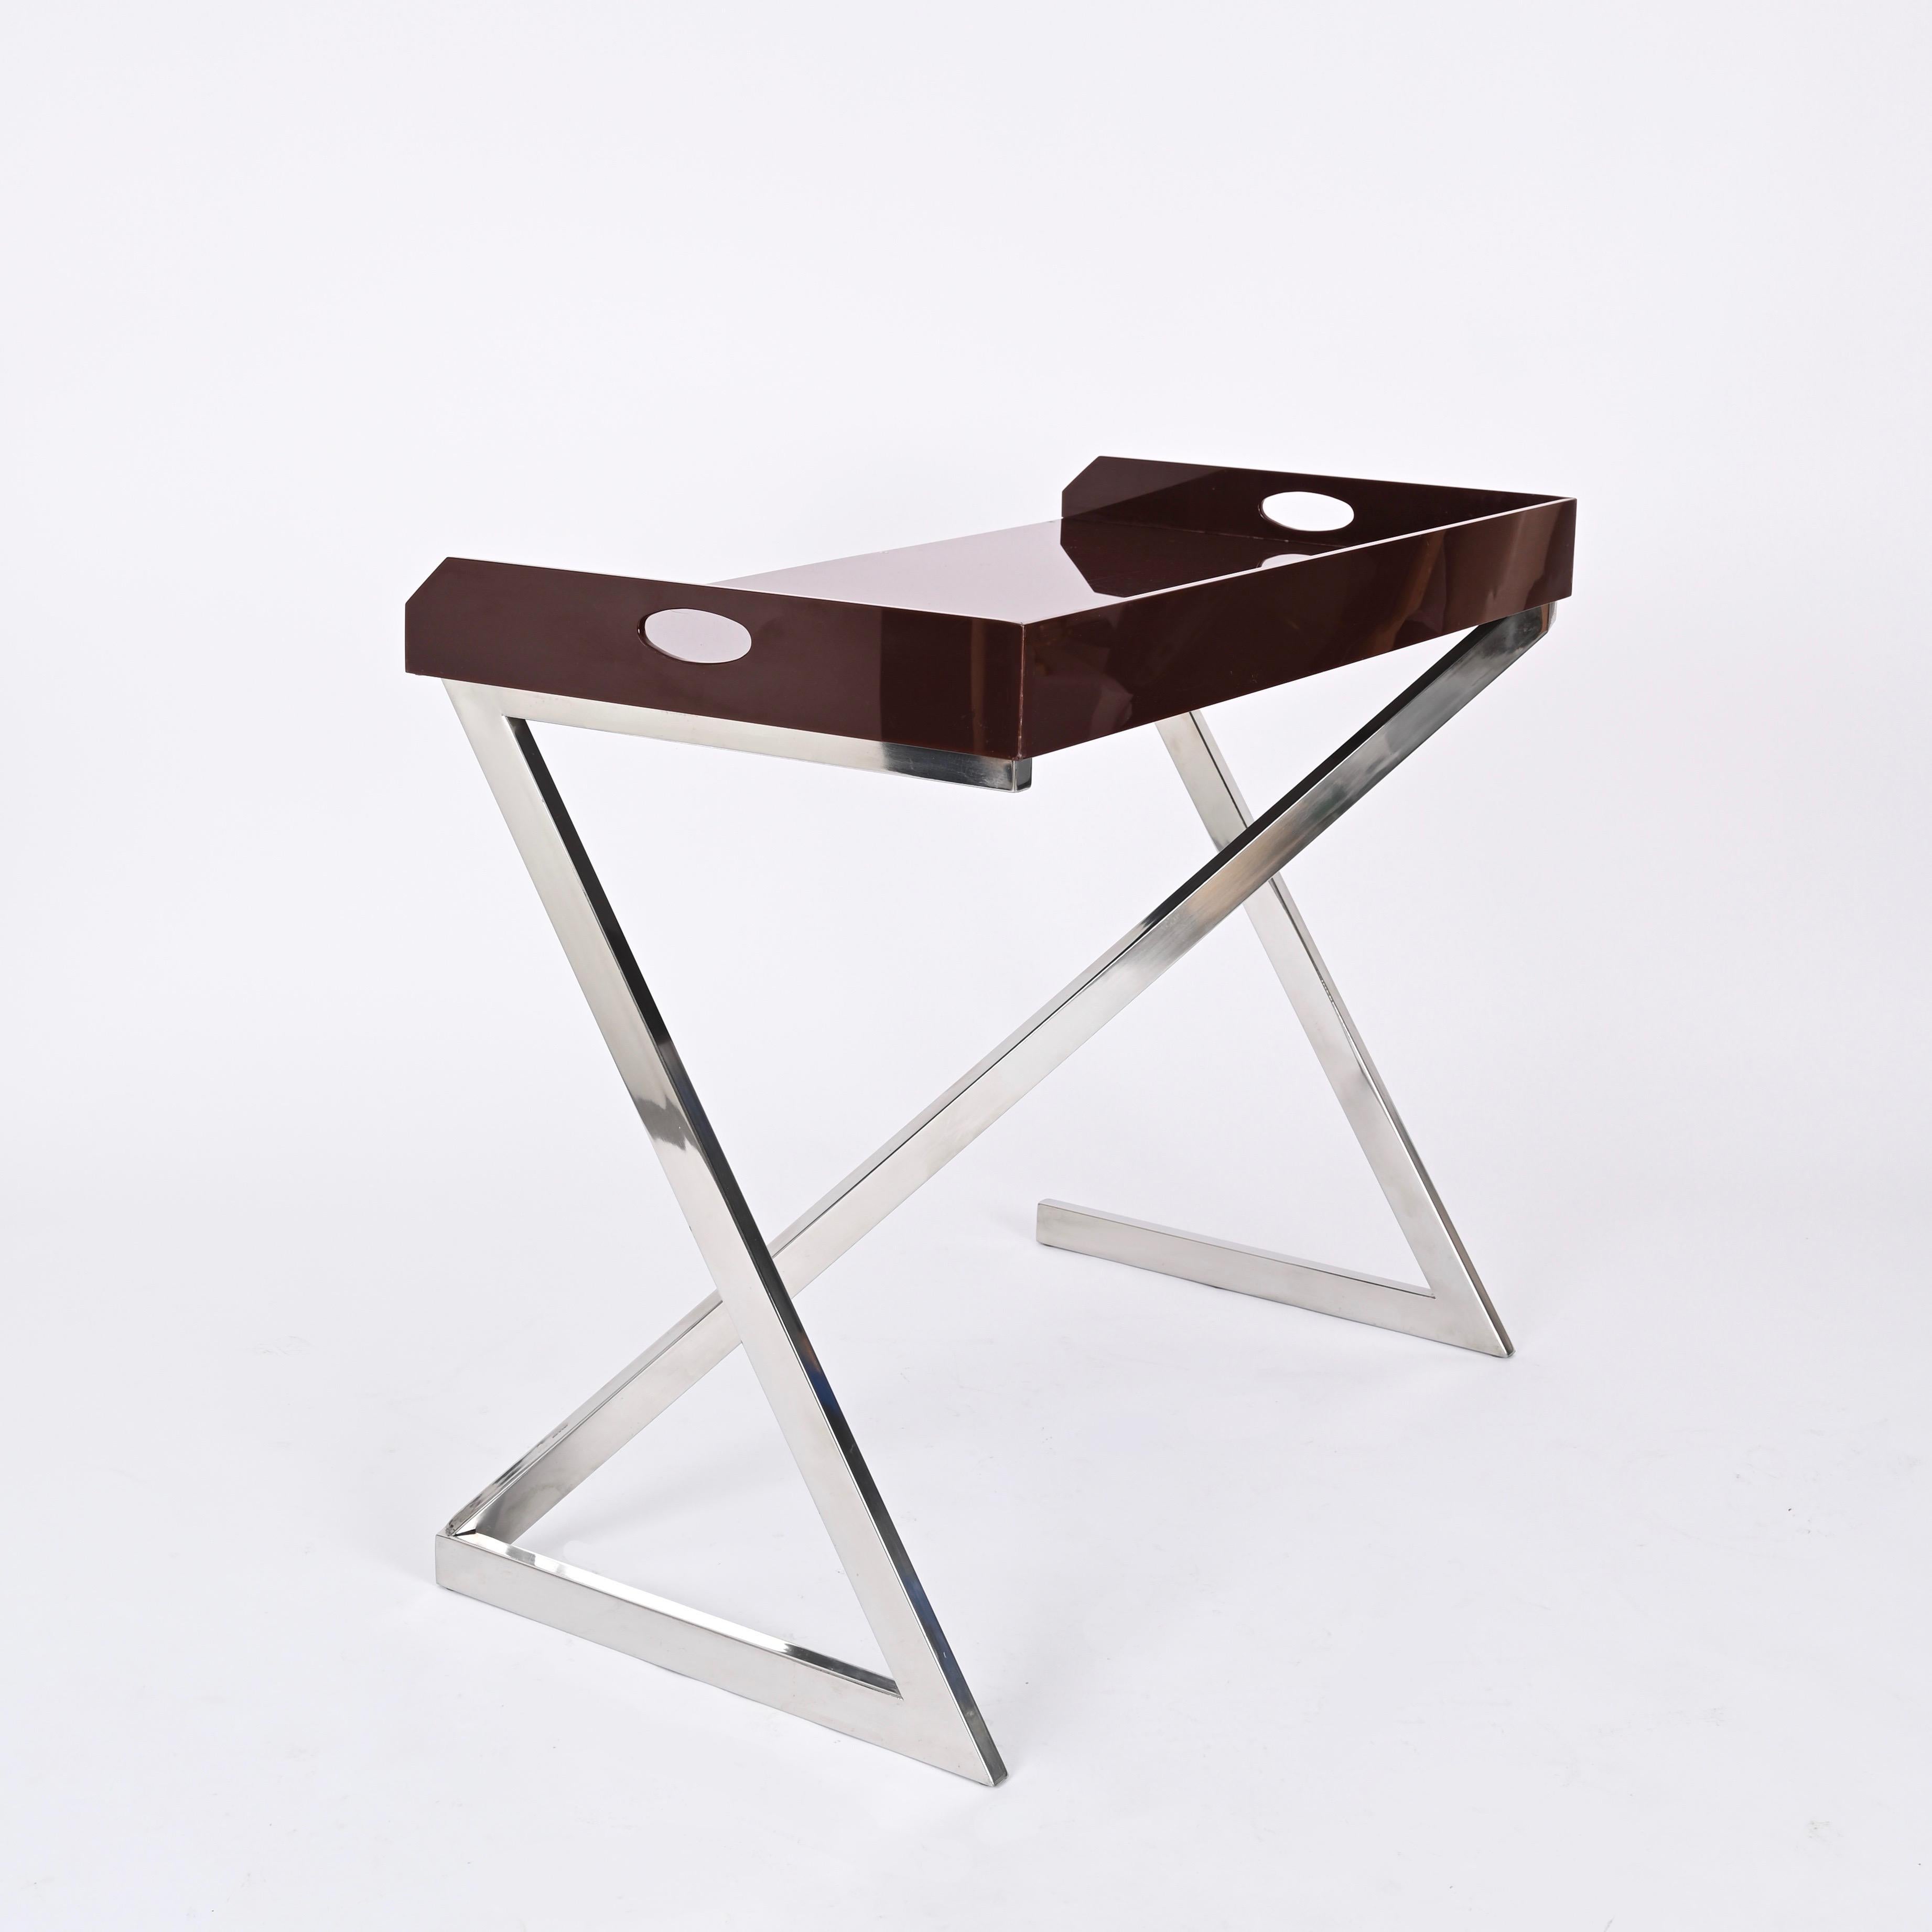 Superbe bureau ou table console en acier chromé avec un plateau en plexiglas brun. Cette pièce incroyablement rare est signée par Romeo Rega et a été conçue à Romeo, en Italie, dans les années 1970.

Cet objet élégant et polyvalent peut être utilisé